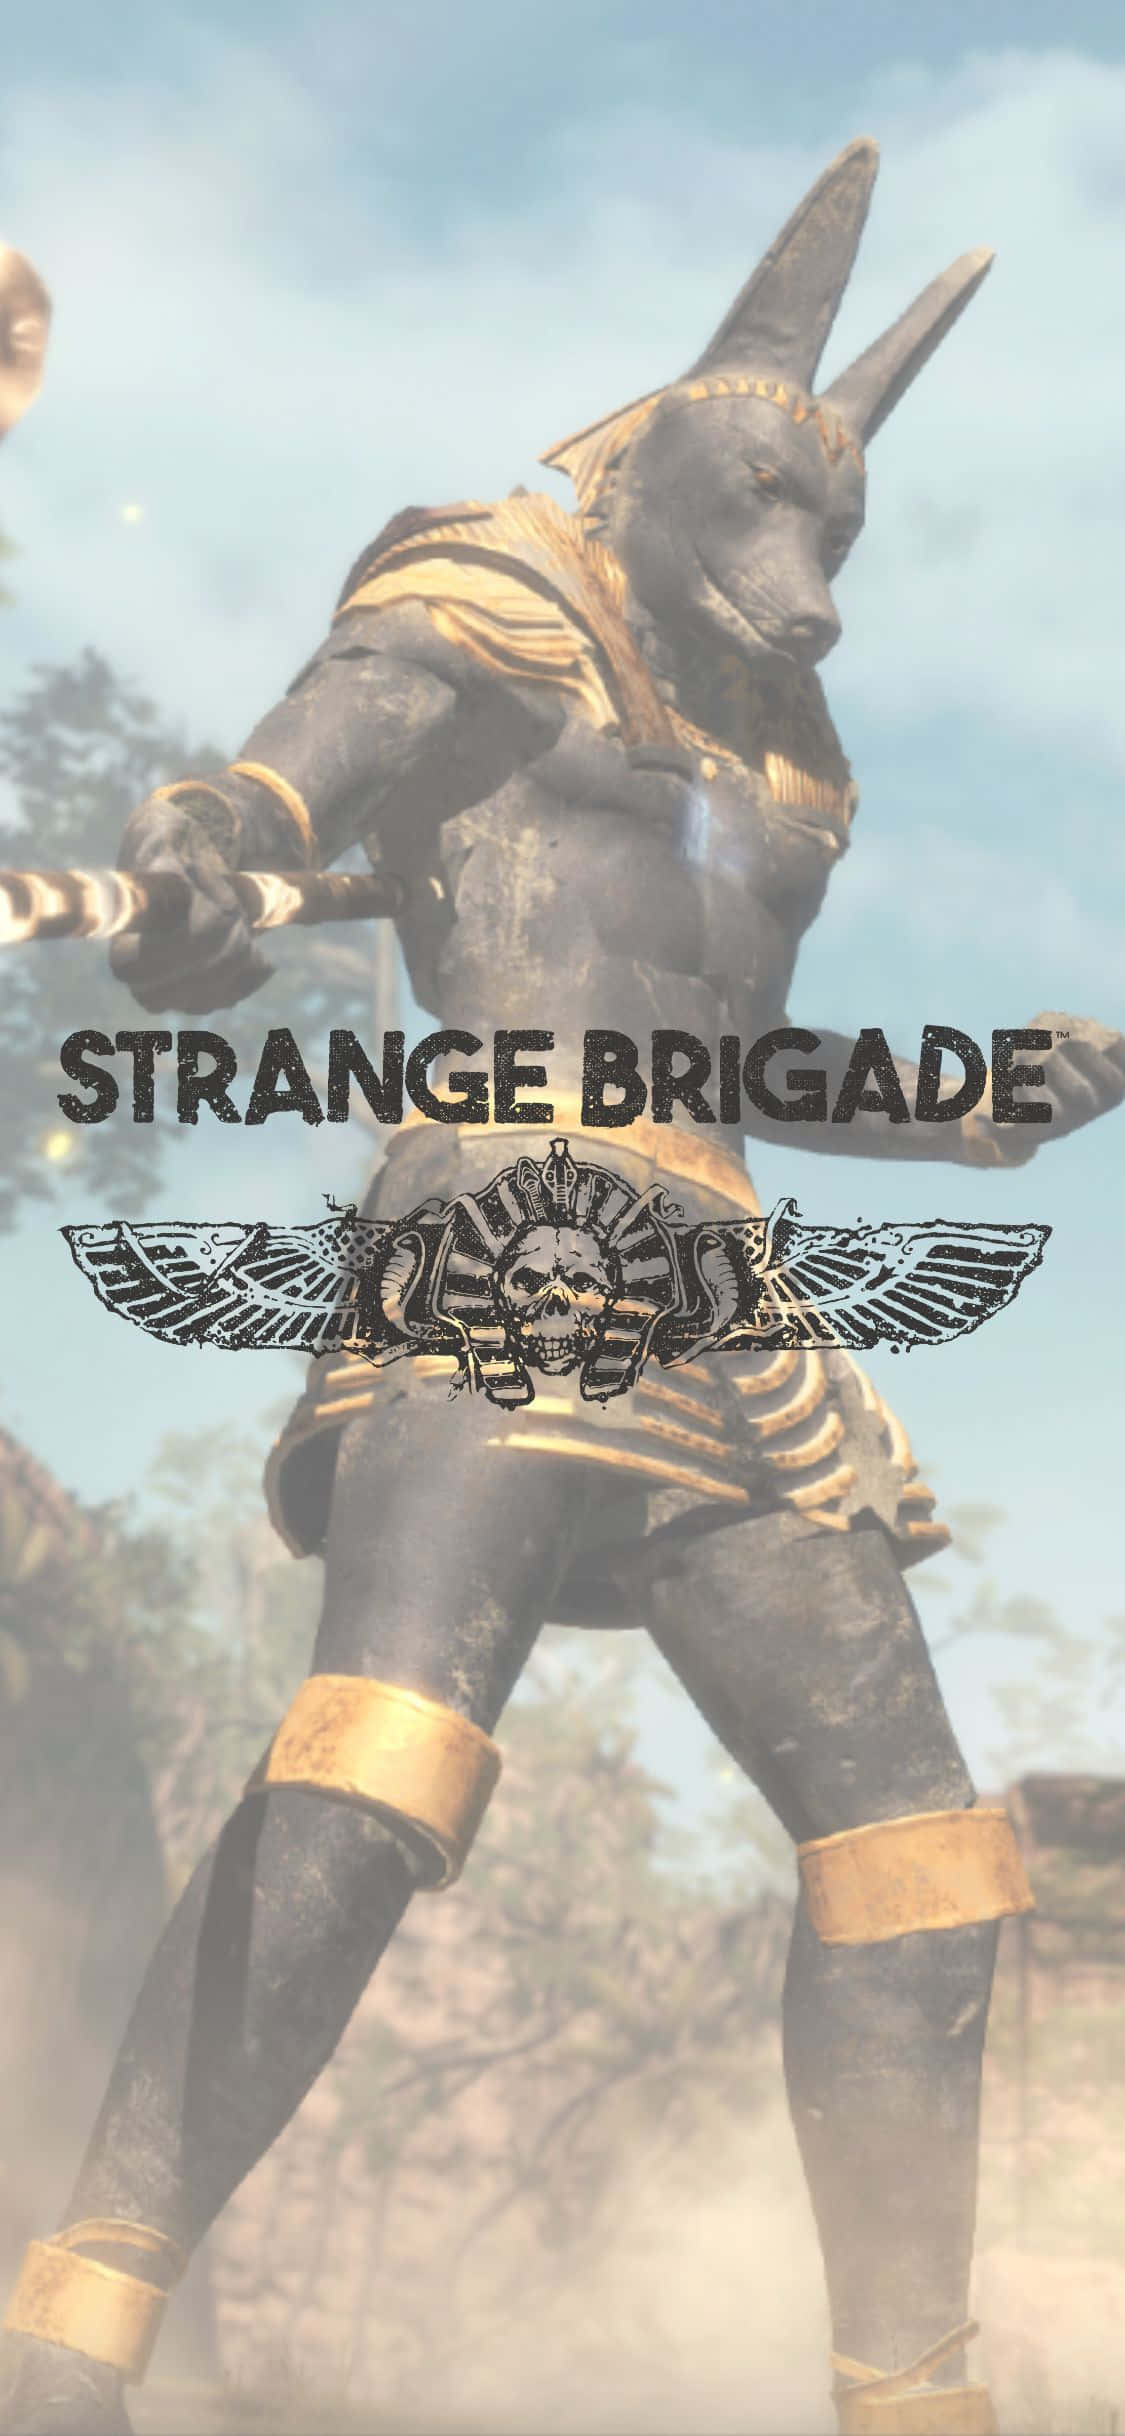 Steinwächteriphone X Hintergrundbild Für Strange Brigade.